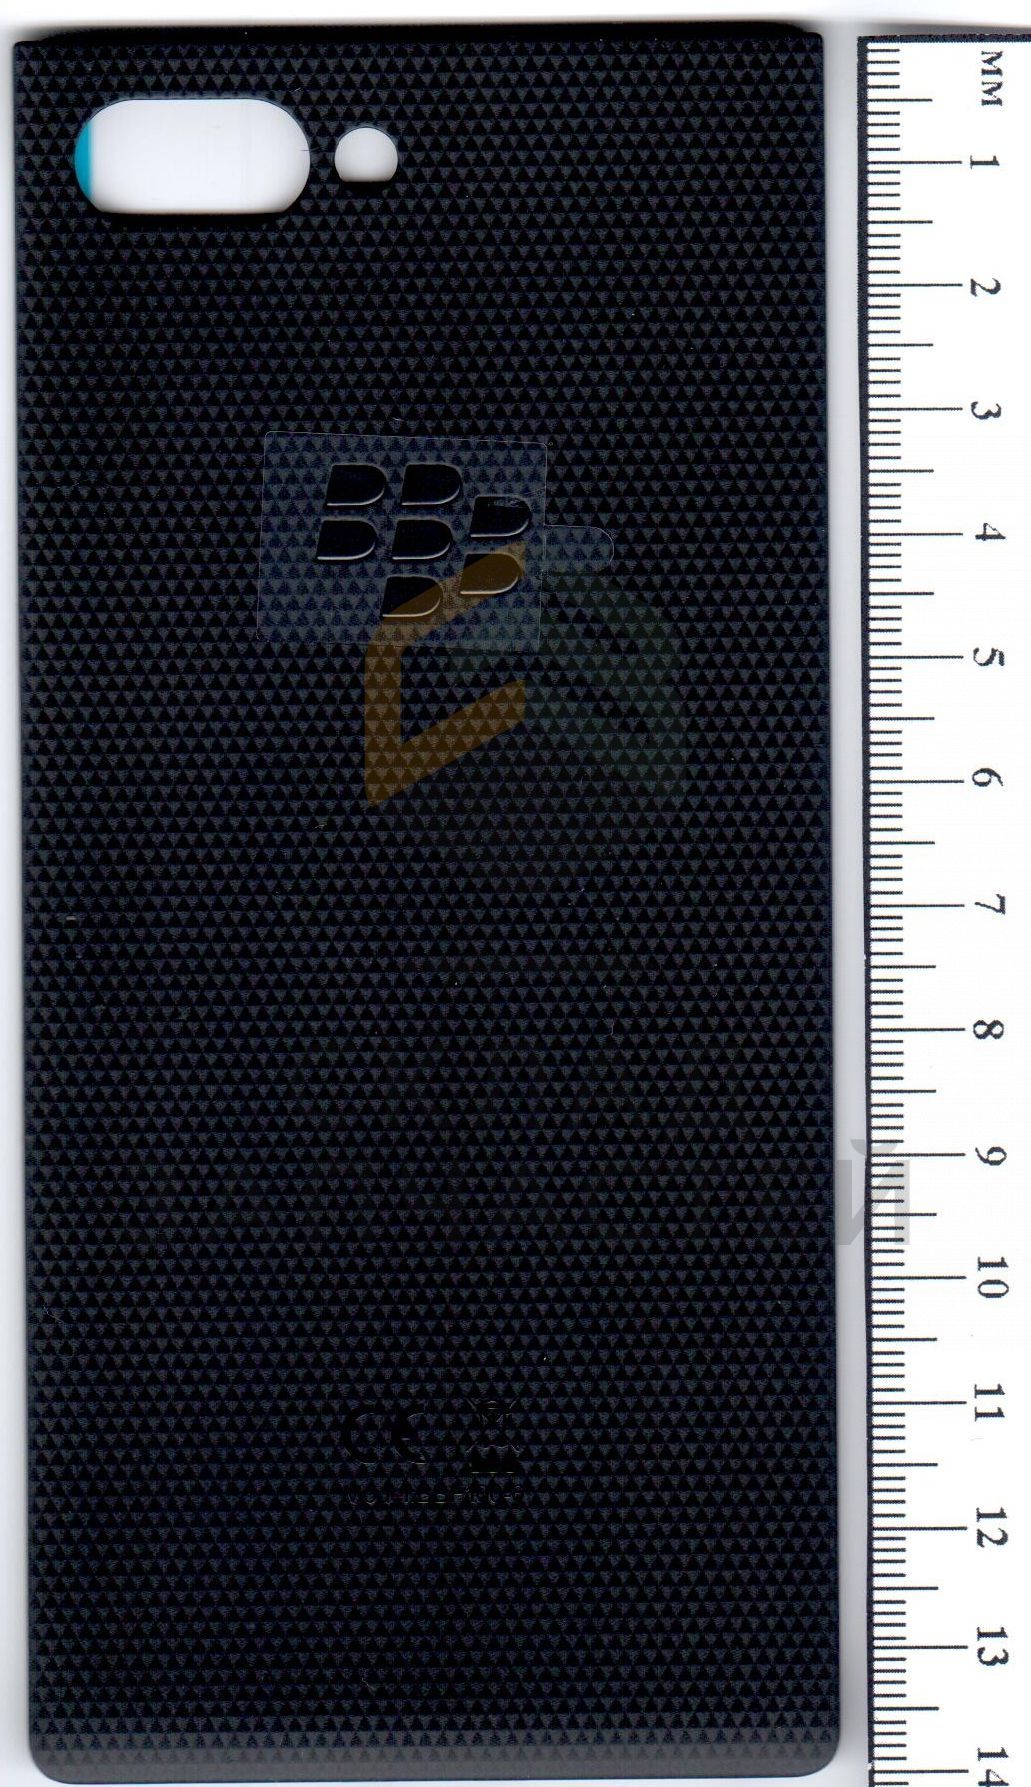 BCJ64J0A12C0 Blackberry оригинал, задняя крышка